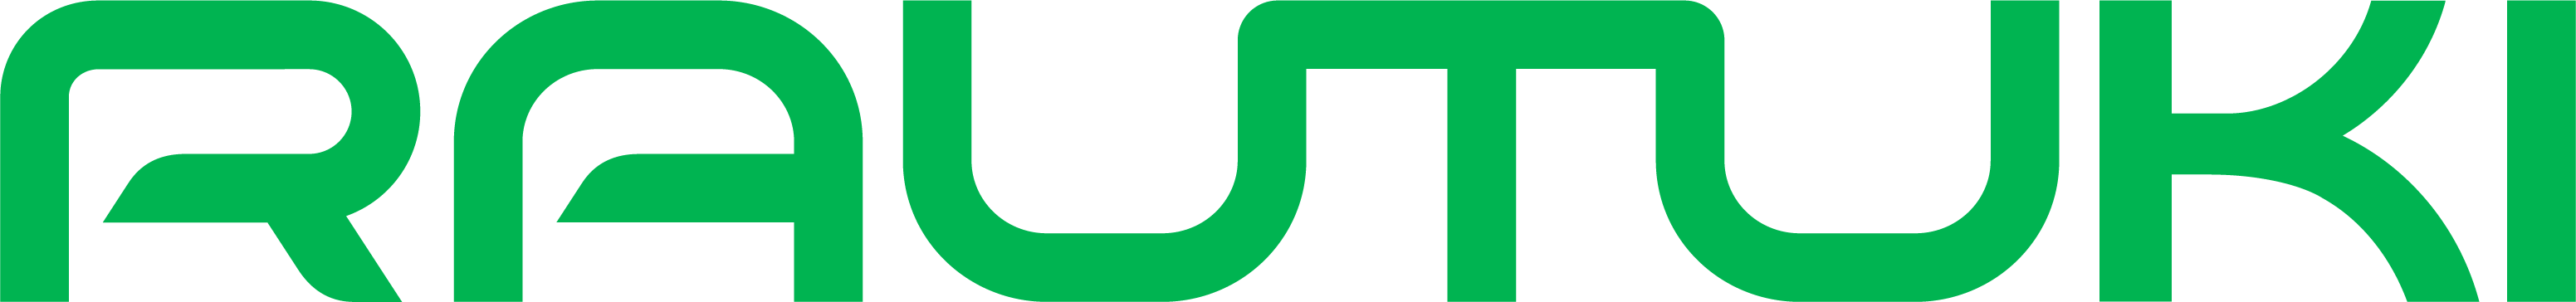 Rautuki logo